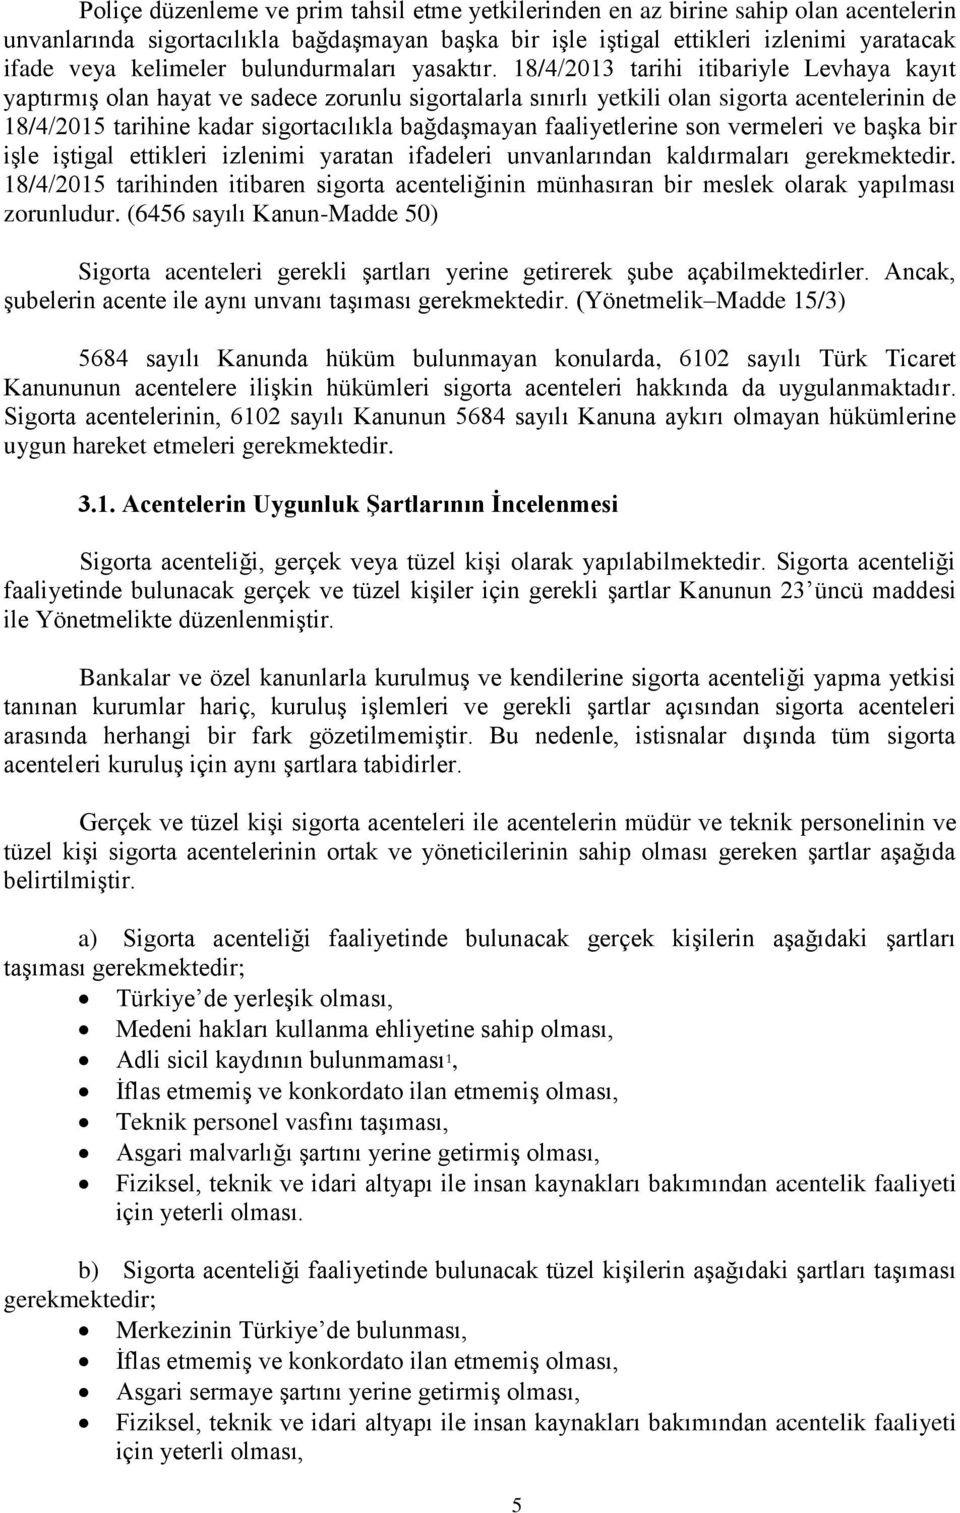 18/4/2013 tarihi itibariyle Levhaya kayıt yaptırmış olan hayat ve sadece zorunlu sigortalarla sınırlı yetkili olan sigorta acentelerinin de 18/4/2015 tarihine kadar sigortacılıkla bağdaşmayan